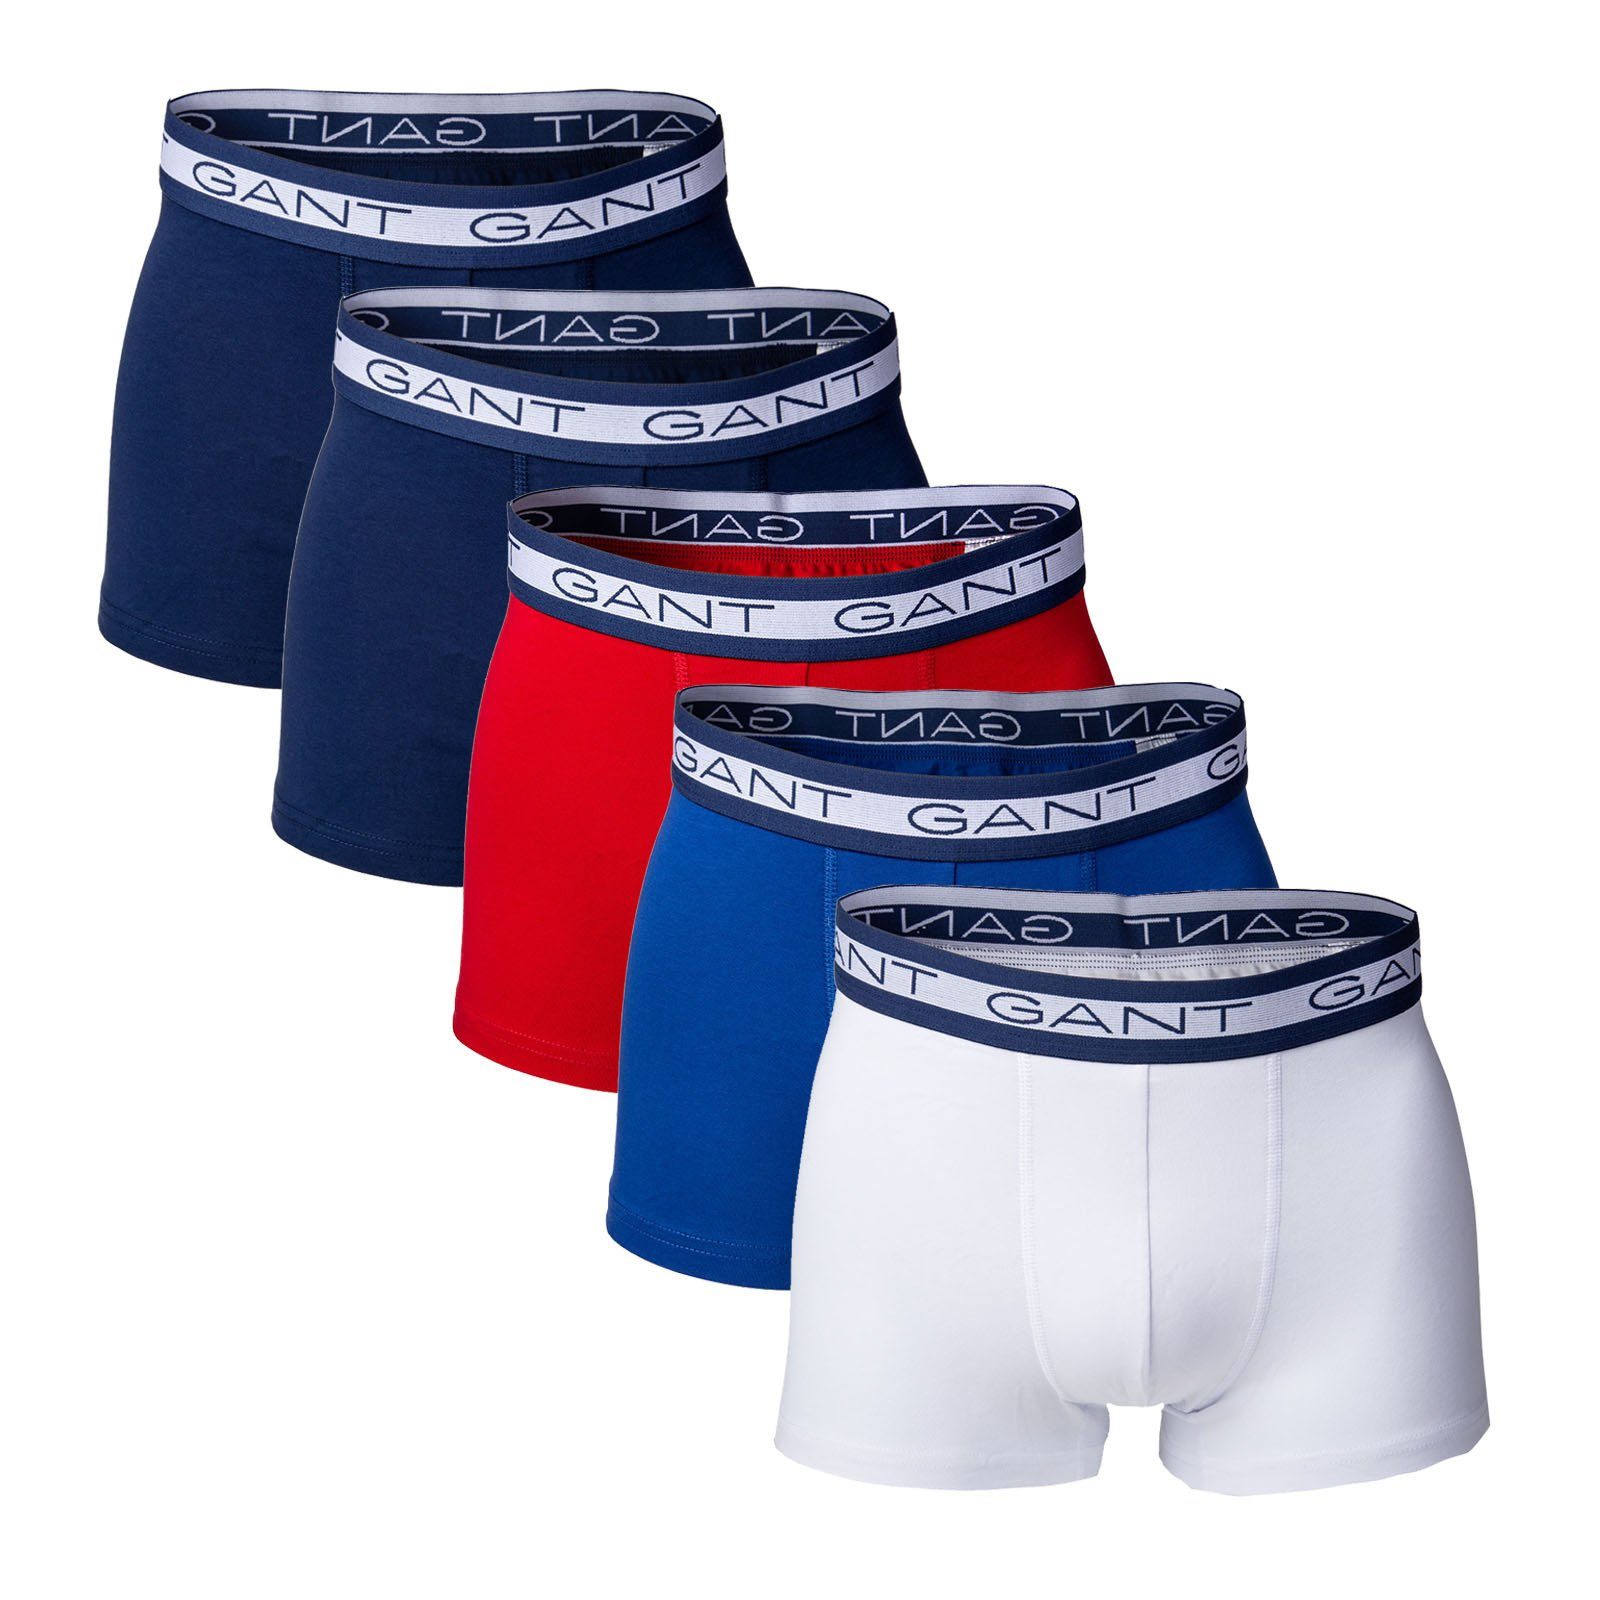 Gant Boxer Herren Boxer Shorts, 5er Pack - Basic Trunks Blau/Weiß/Rot